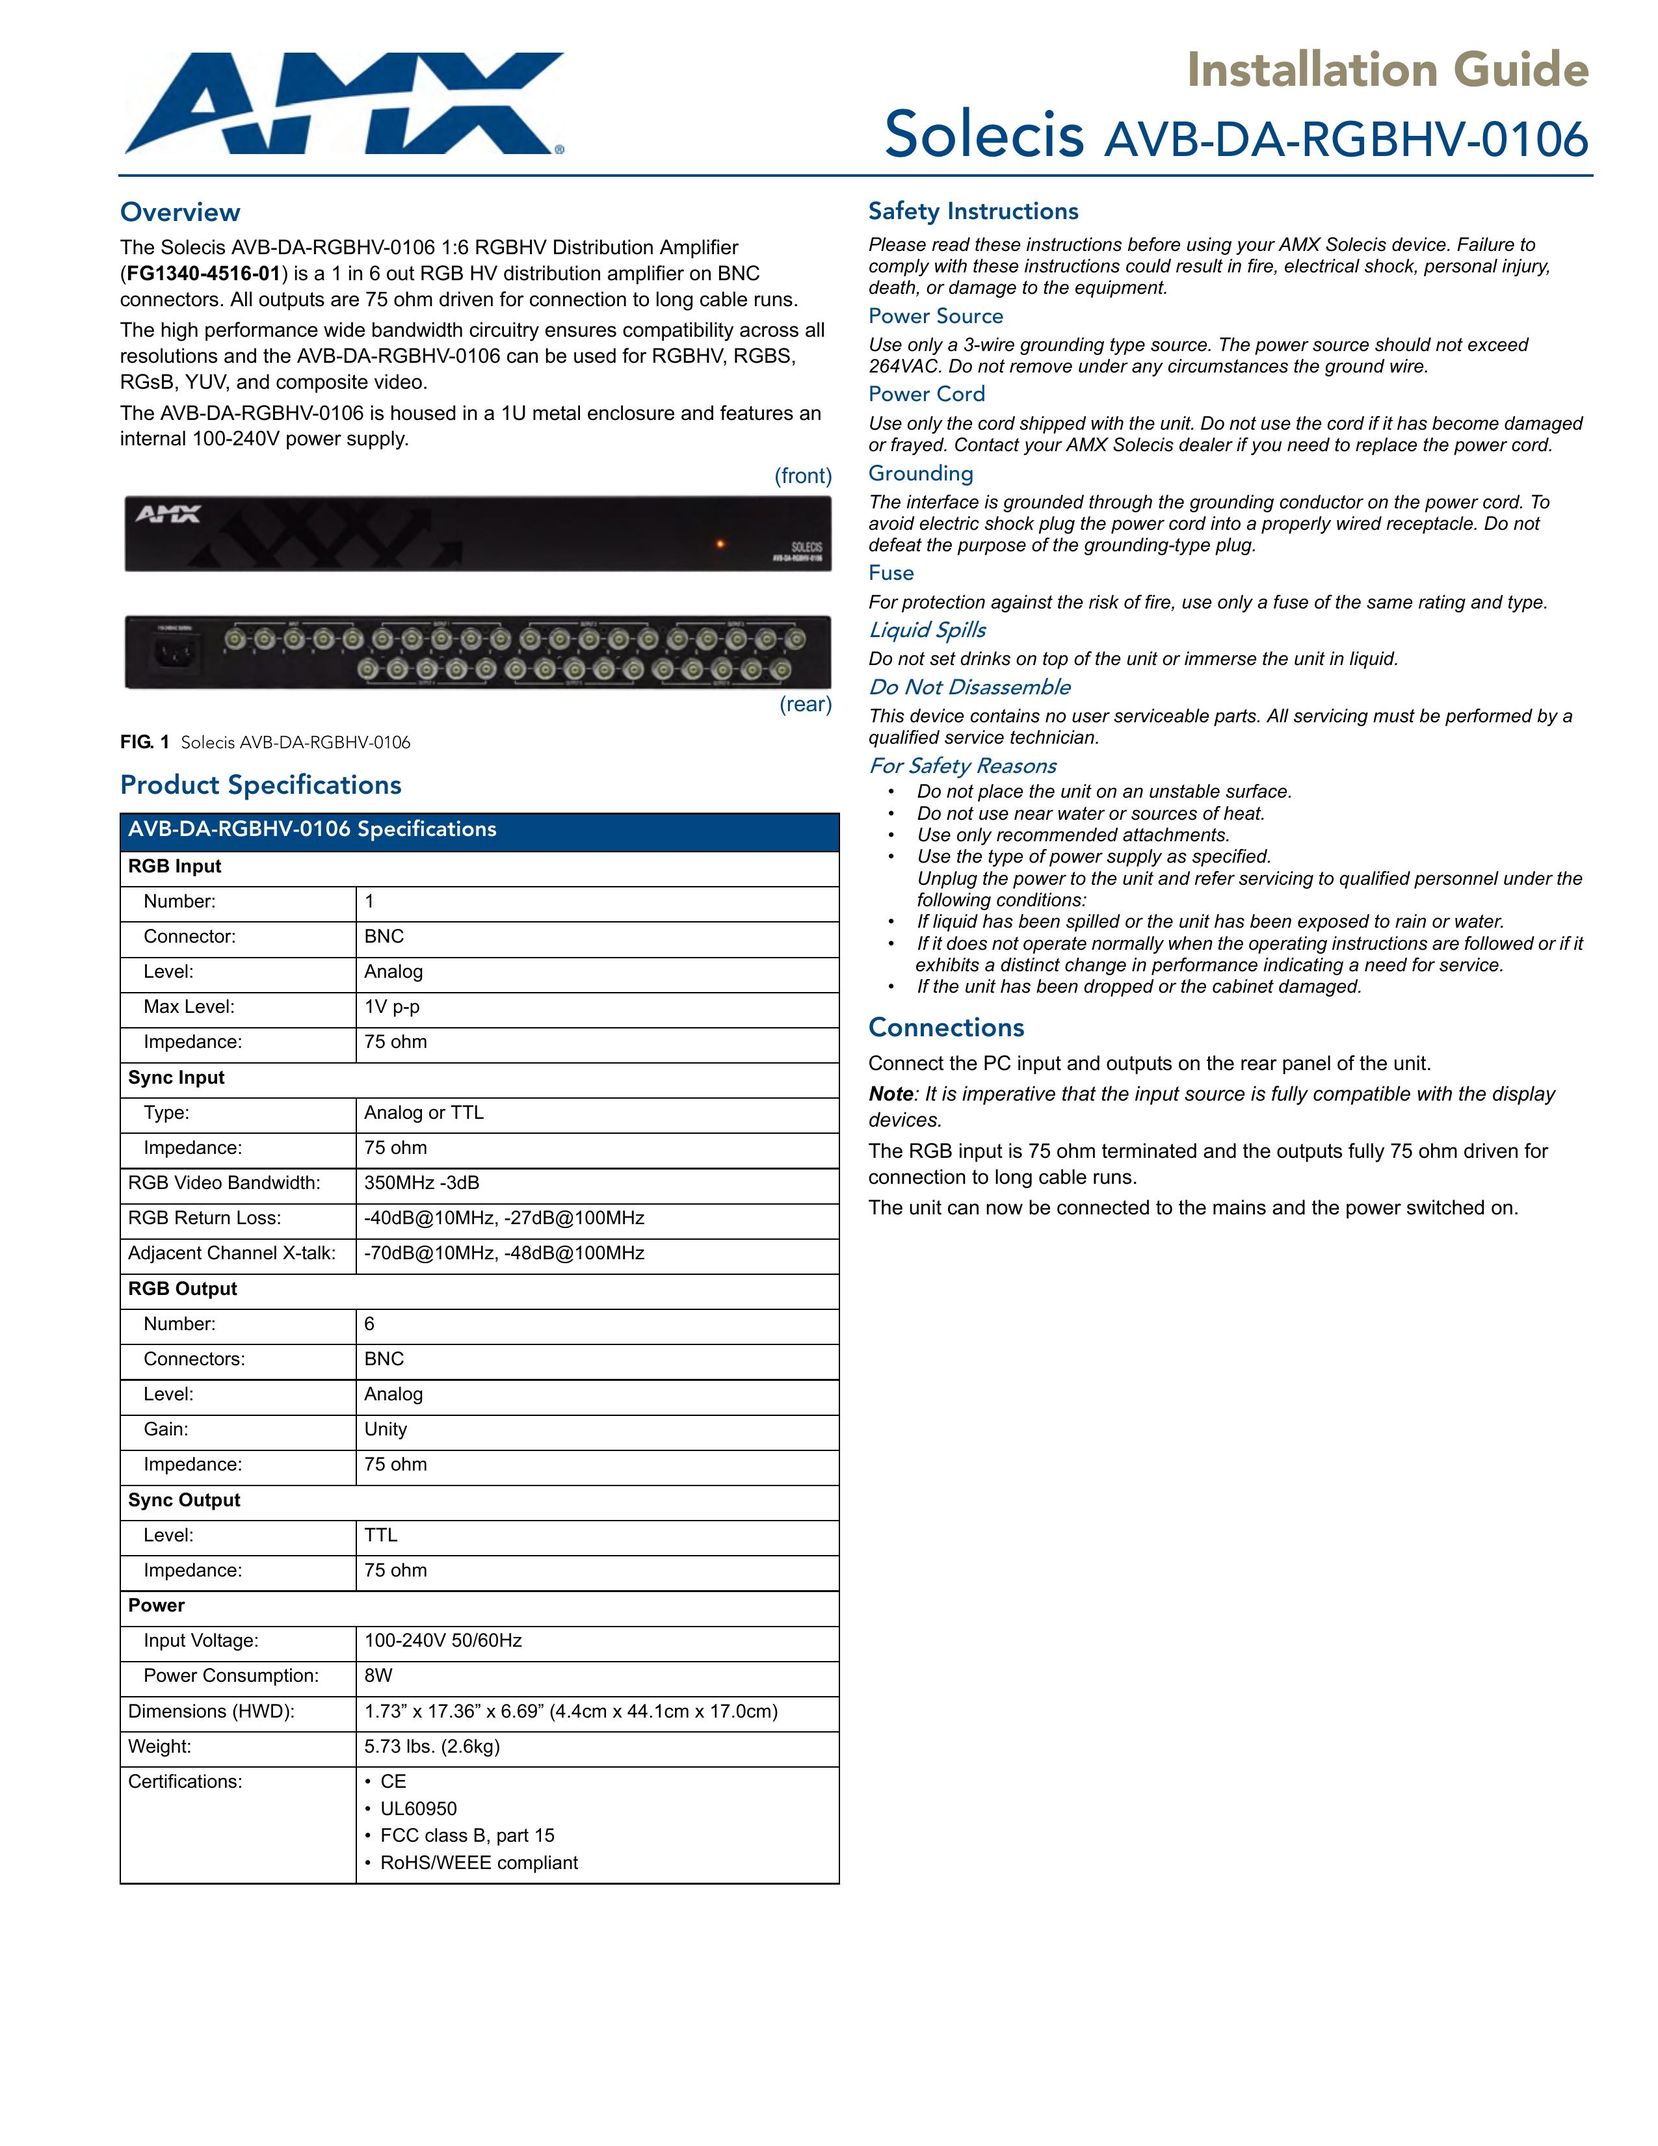 AMX AVB-DA-RGBHV-0106 Stereo Amplifier User Manual